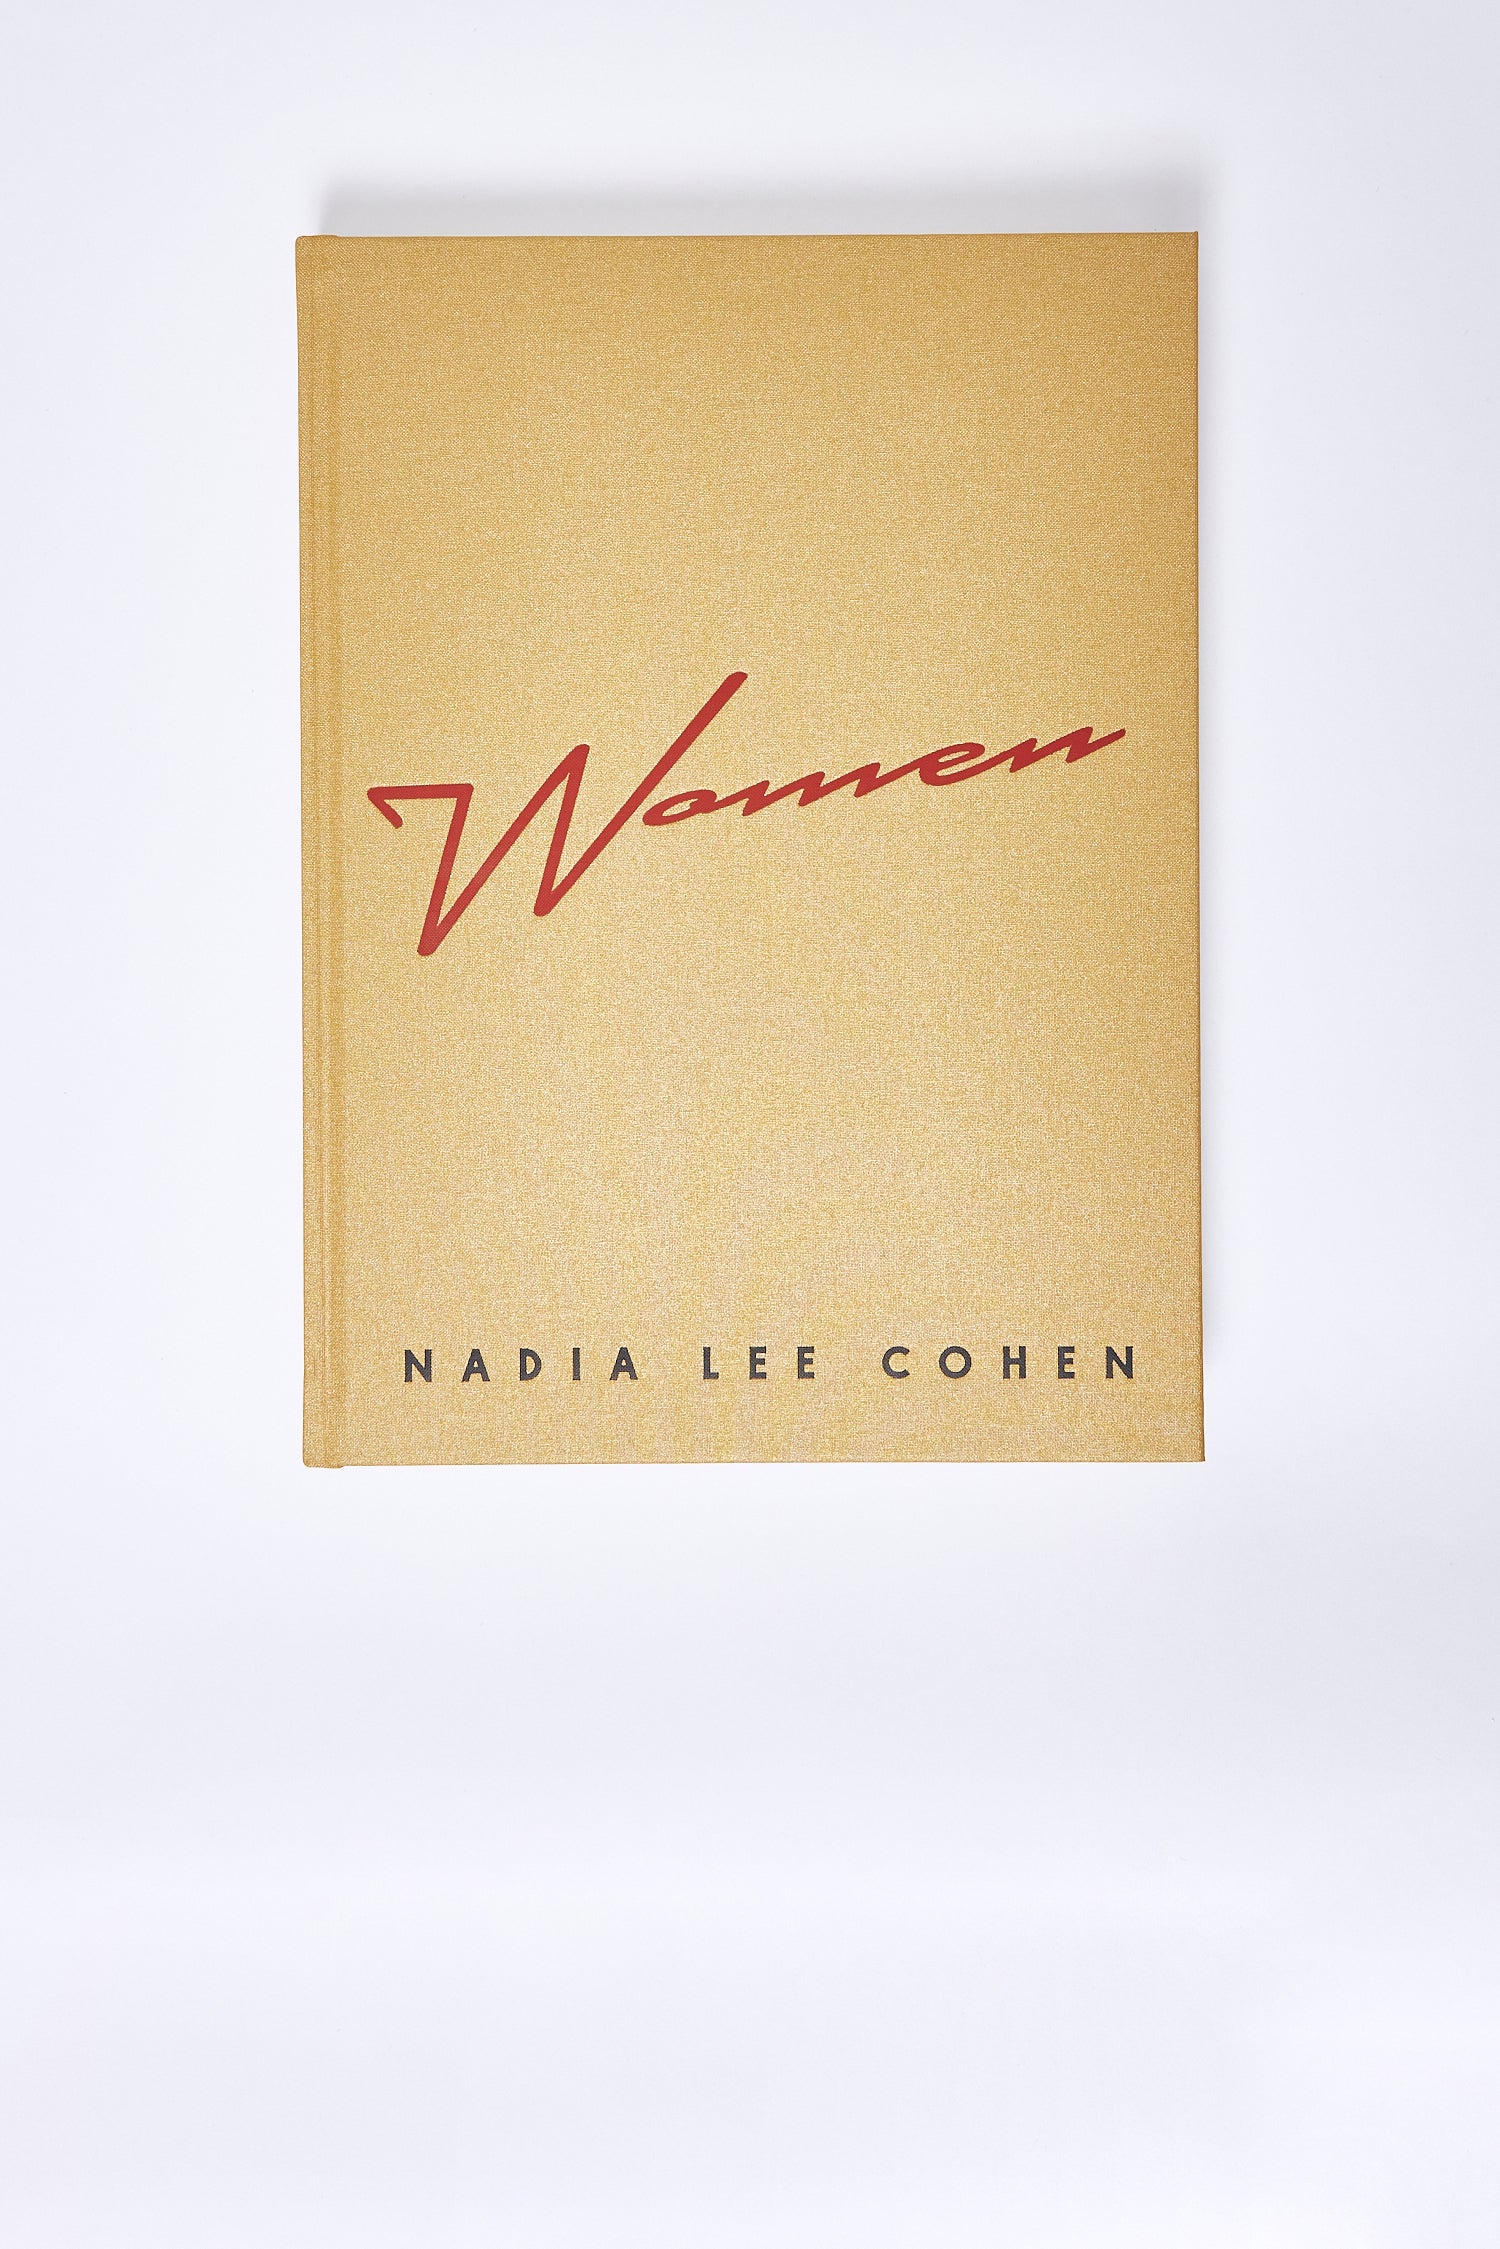 Women by Nadia Lee Cohen